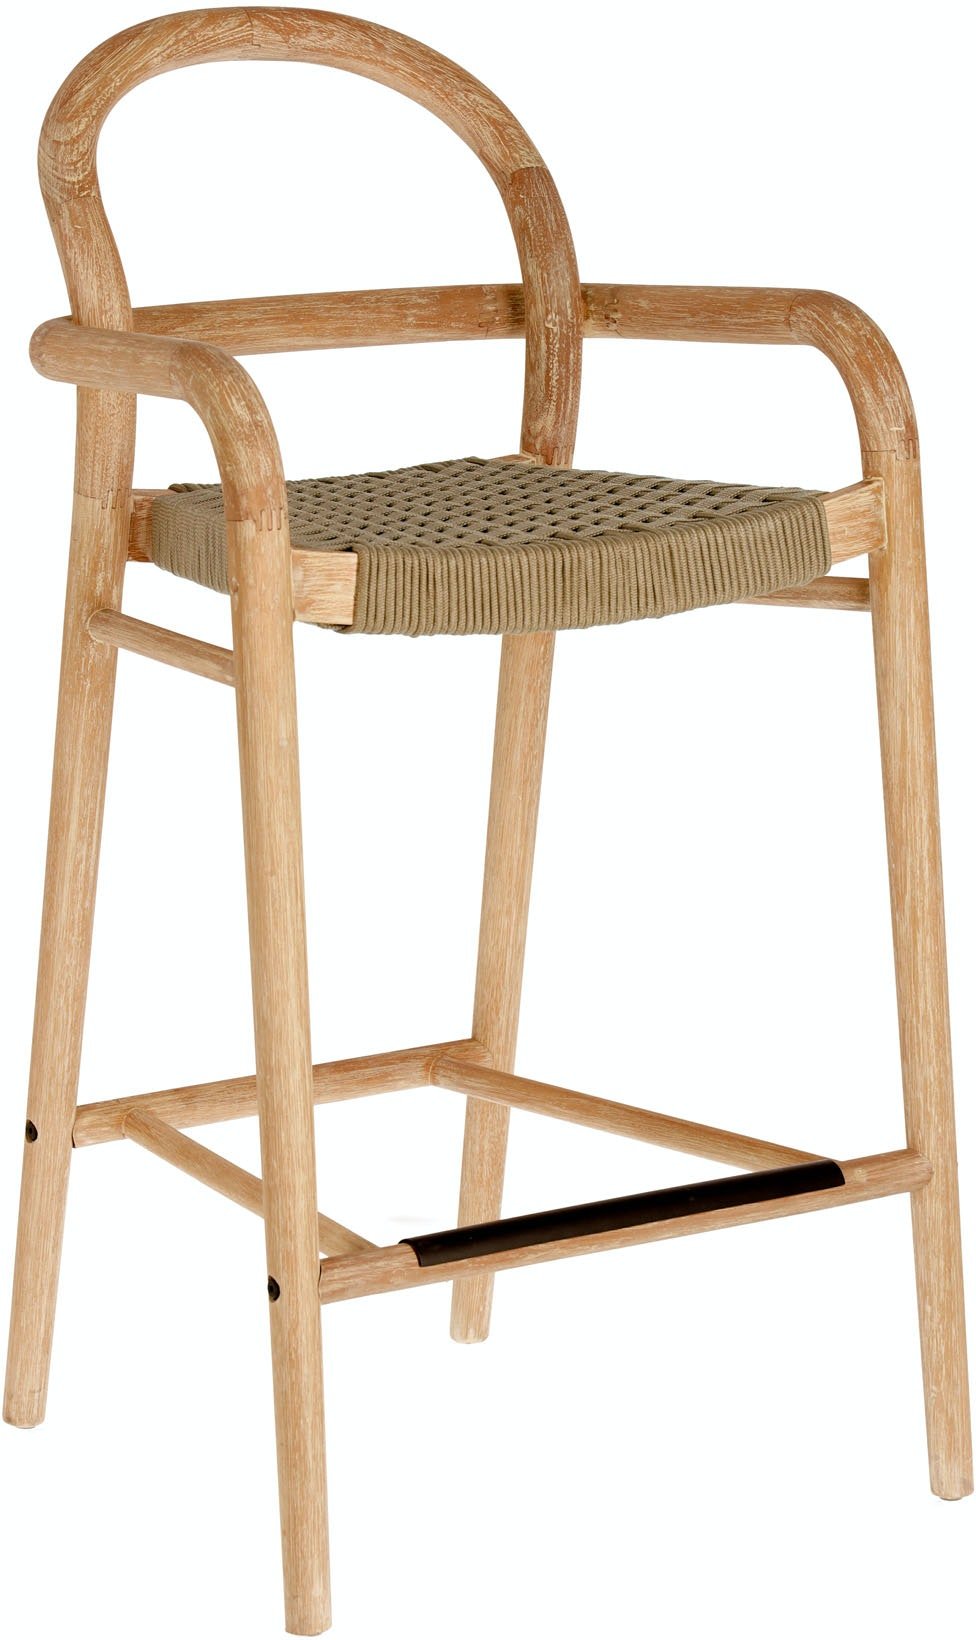 10: Sheryl, Udendørs barstol by LaForma (H: 100 cm. B: 54 cm. L: 52 cm., Natur/beige)